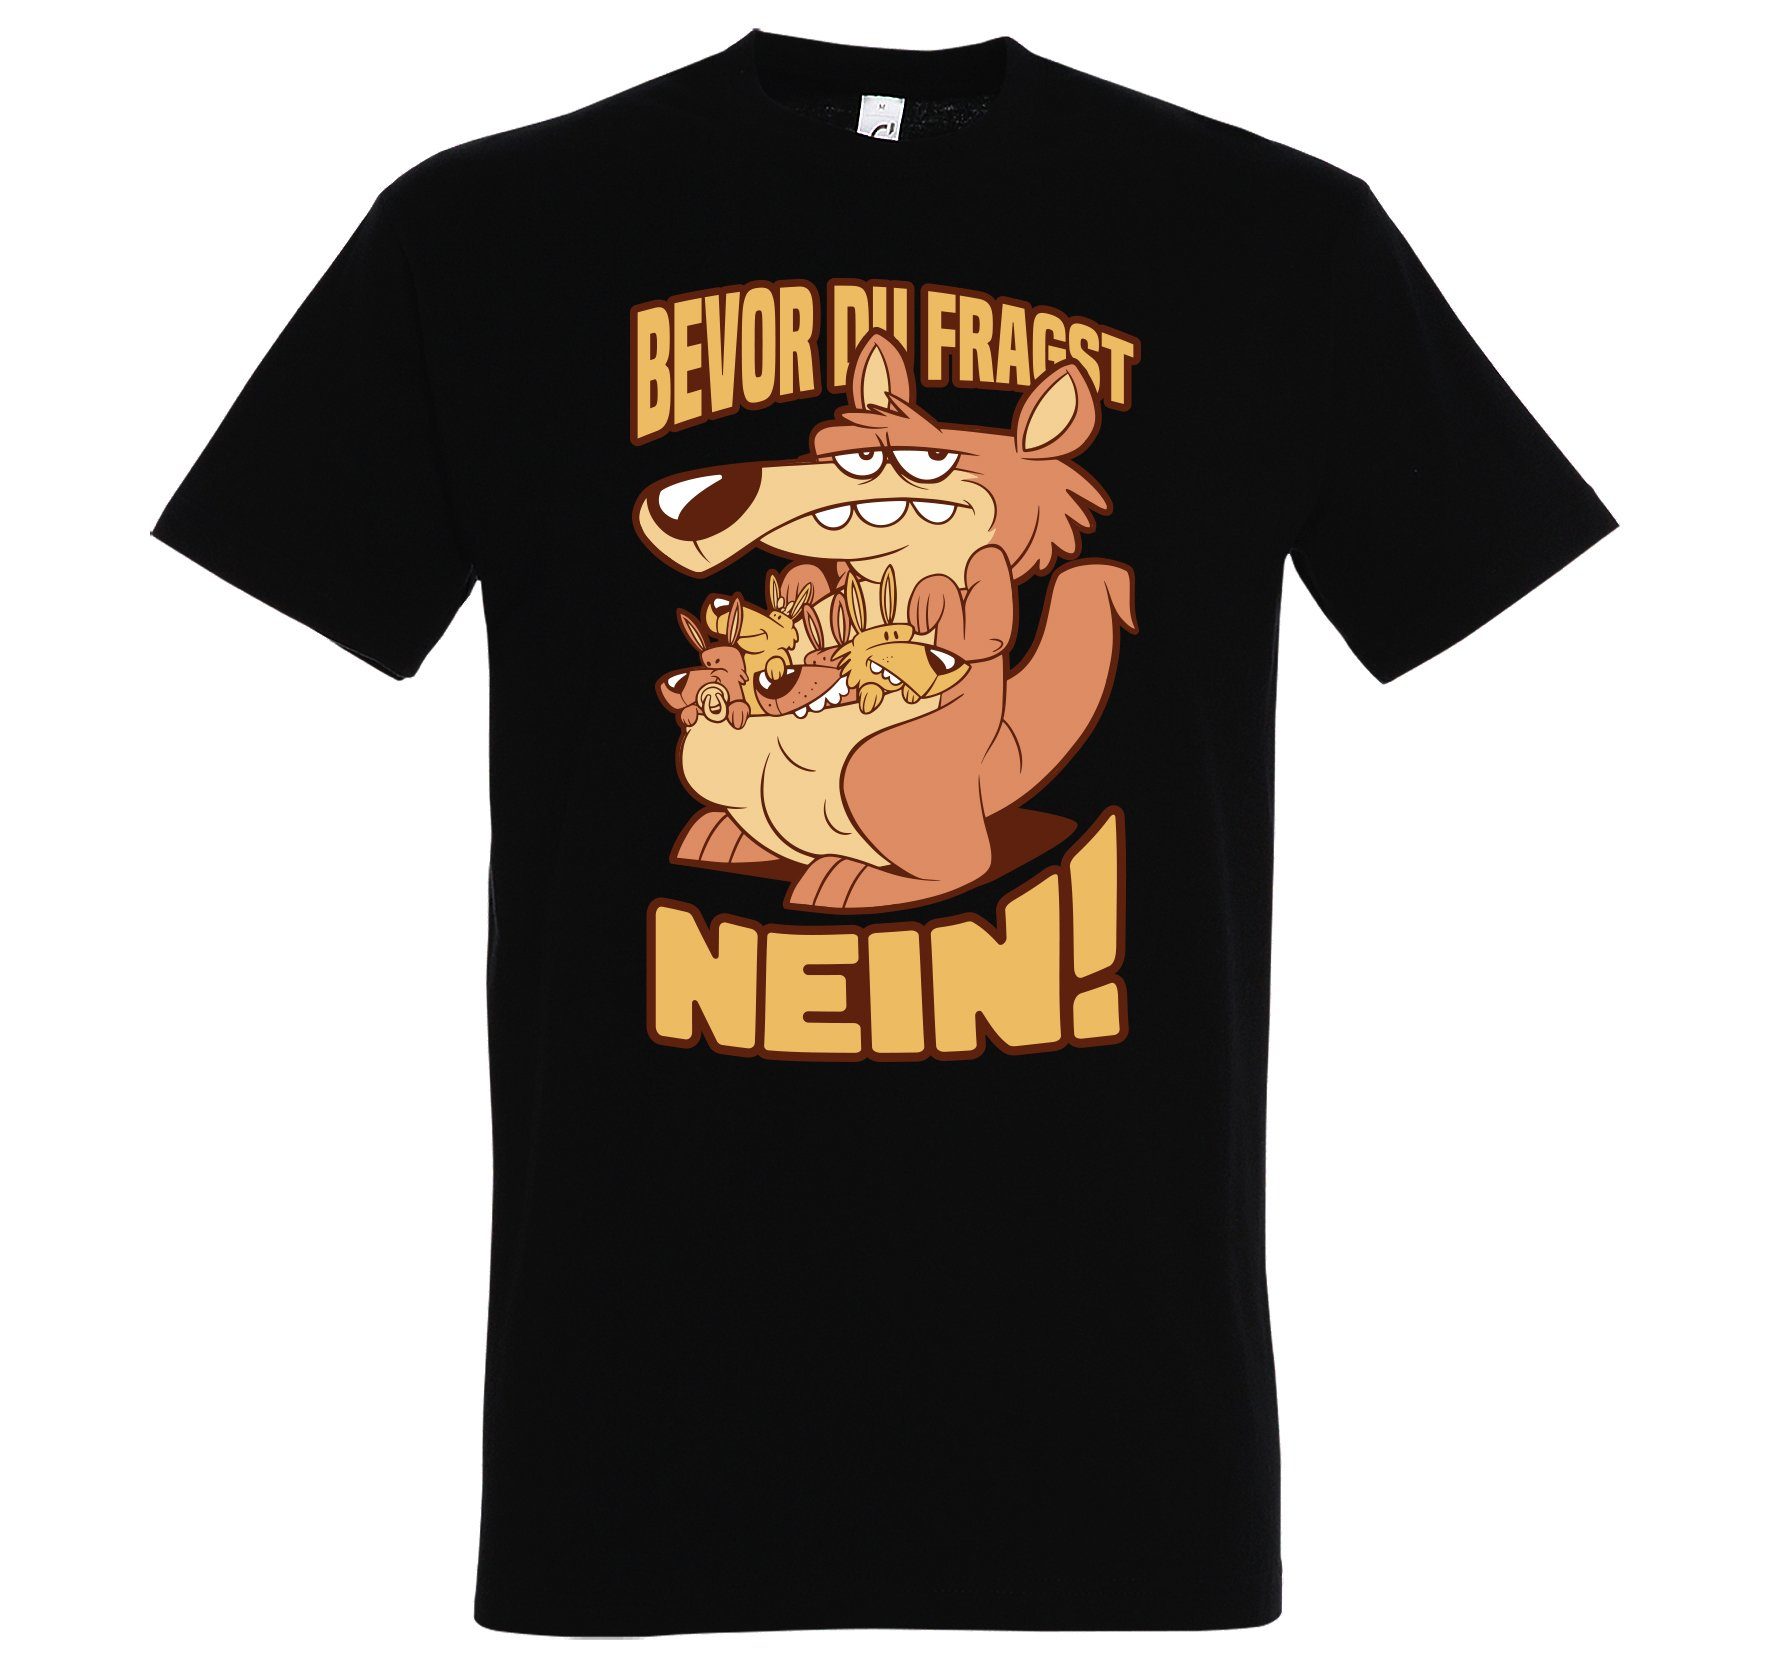 Youth Designz Print-Shirt Herren T-Shirt BEVOR DU FRAGST NEIN mit lustigem Spruch Aufdruck Schwarz